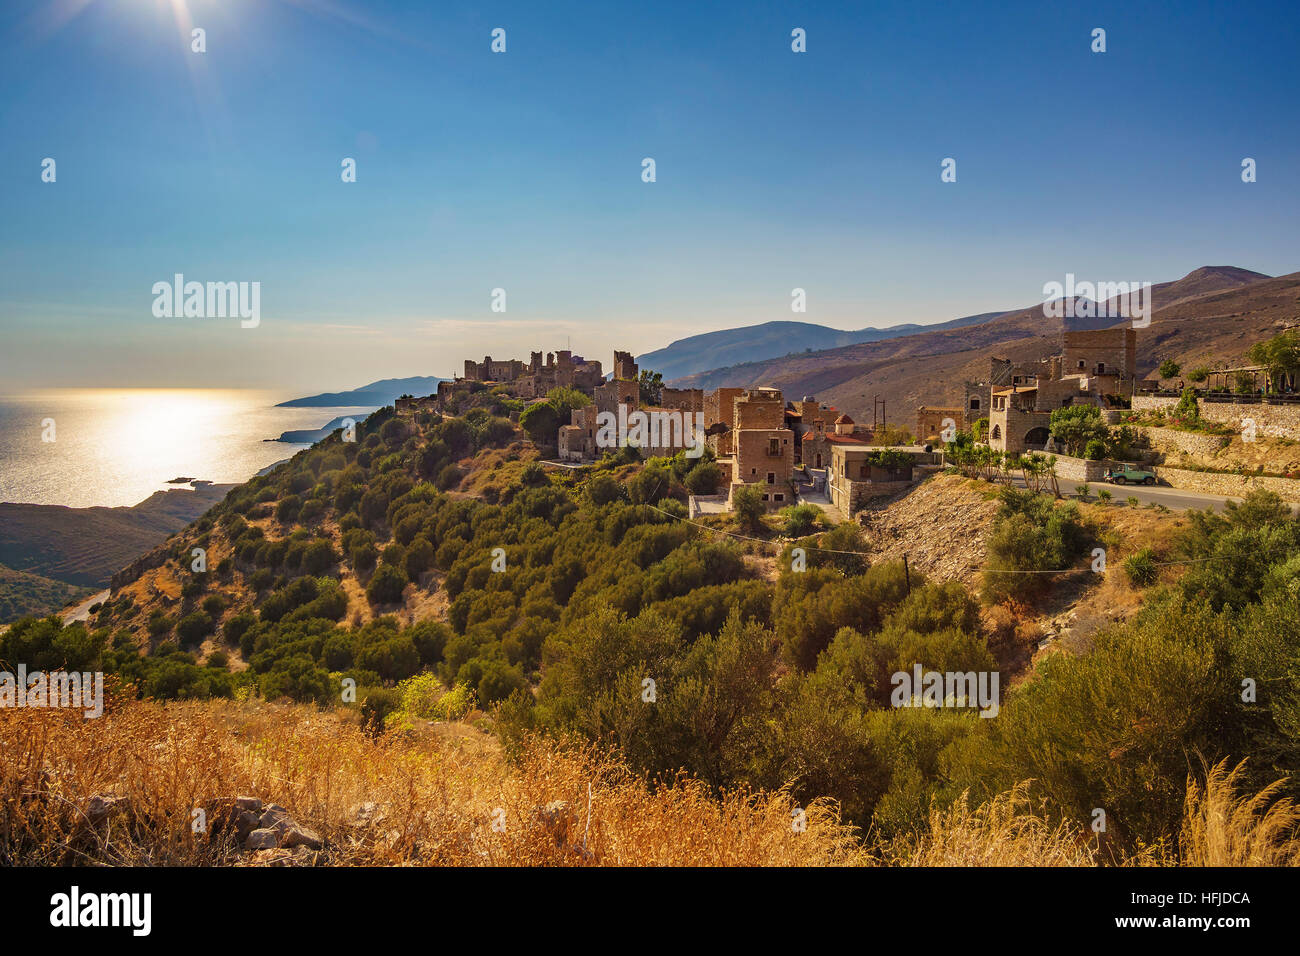 Das traditionelle Dorf Vatheia in Lakonien, Peloponnes, Griechenland. Stockfoto